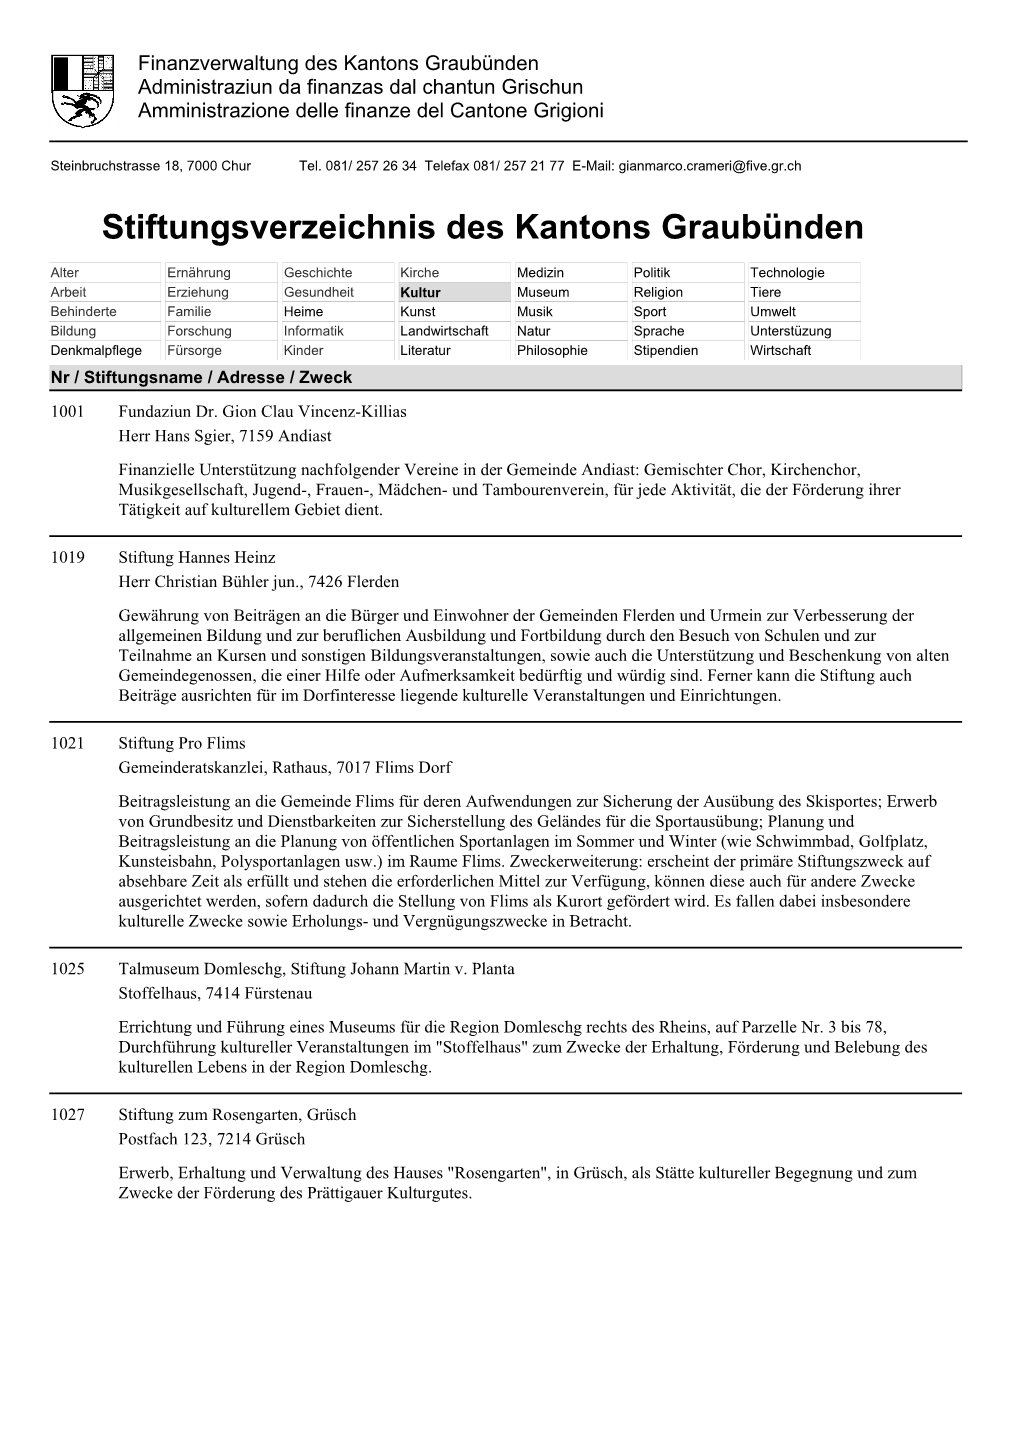 Stiftungsverzeichnis Des Kantons Graubünden